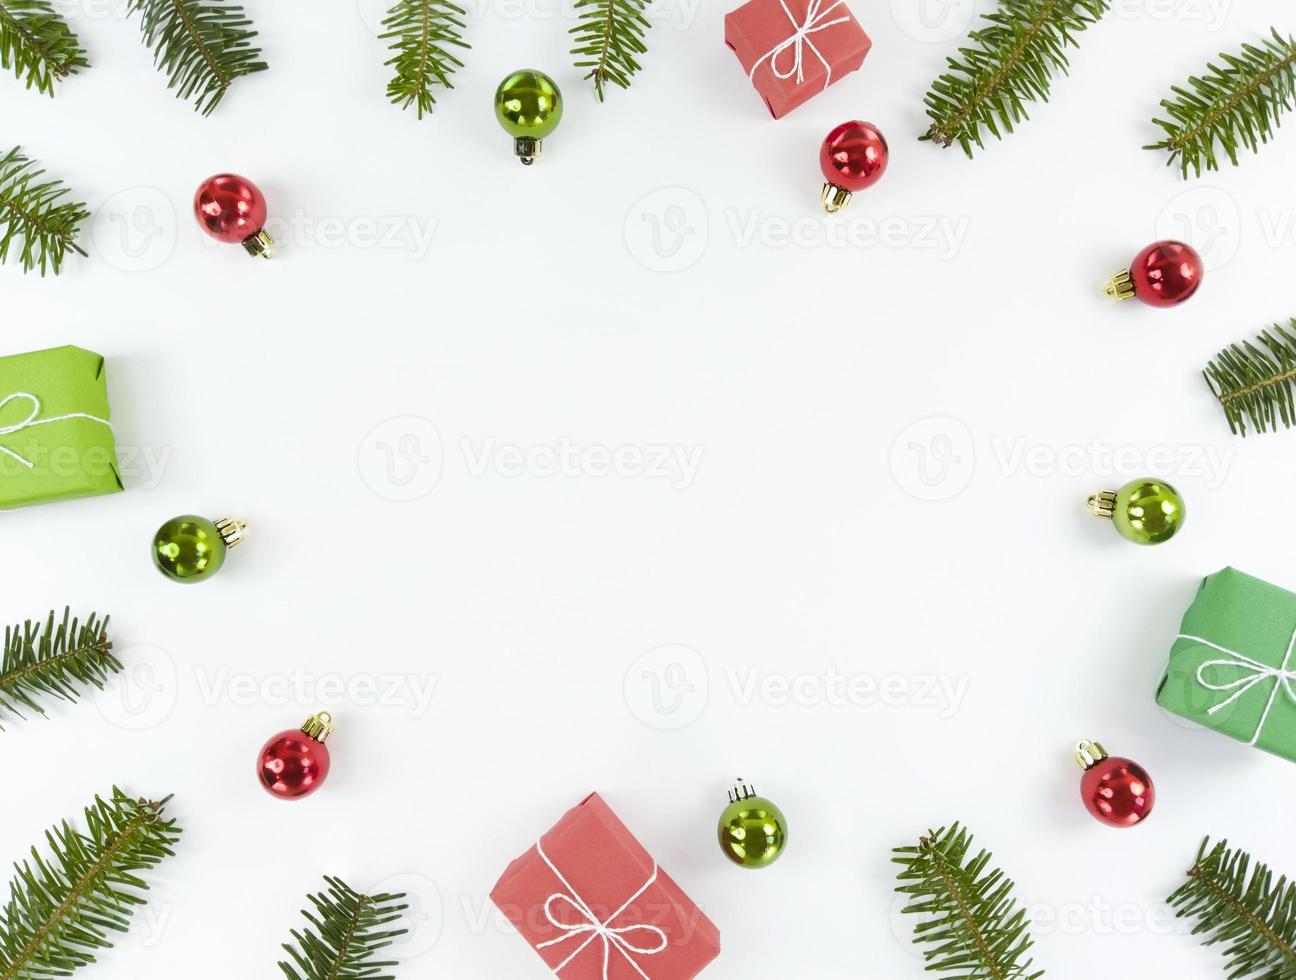 Natal plana deitar com espaço de cópia no meio. cartão postal de férias com galhos de árvore do abeto, enfeites verdes e vermelhos, caixas de presente em um fundo wihte. foto